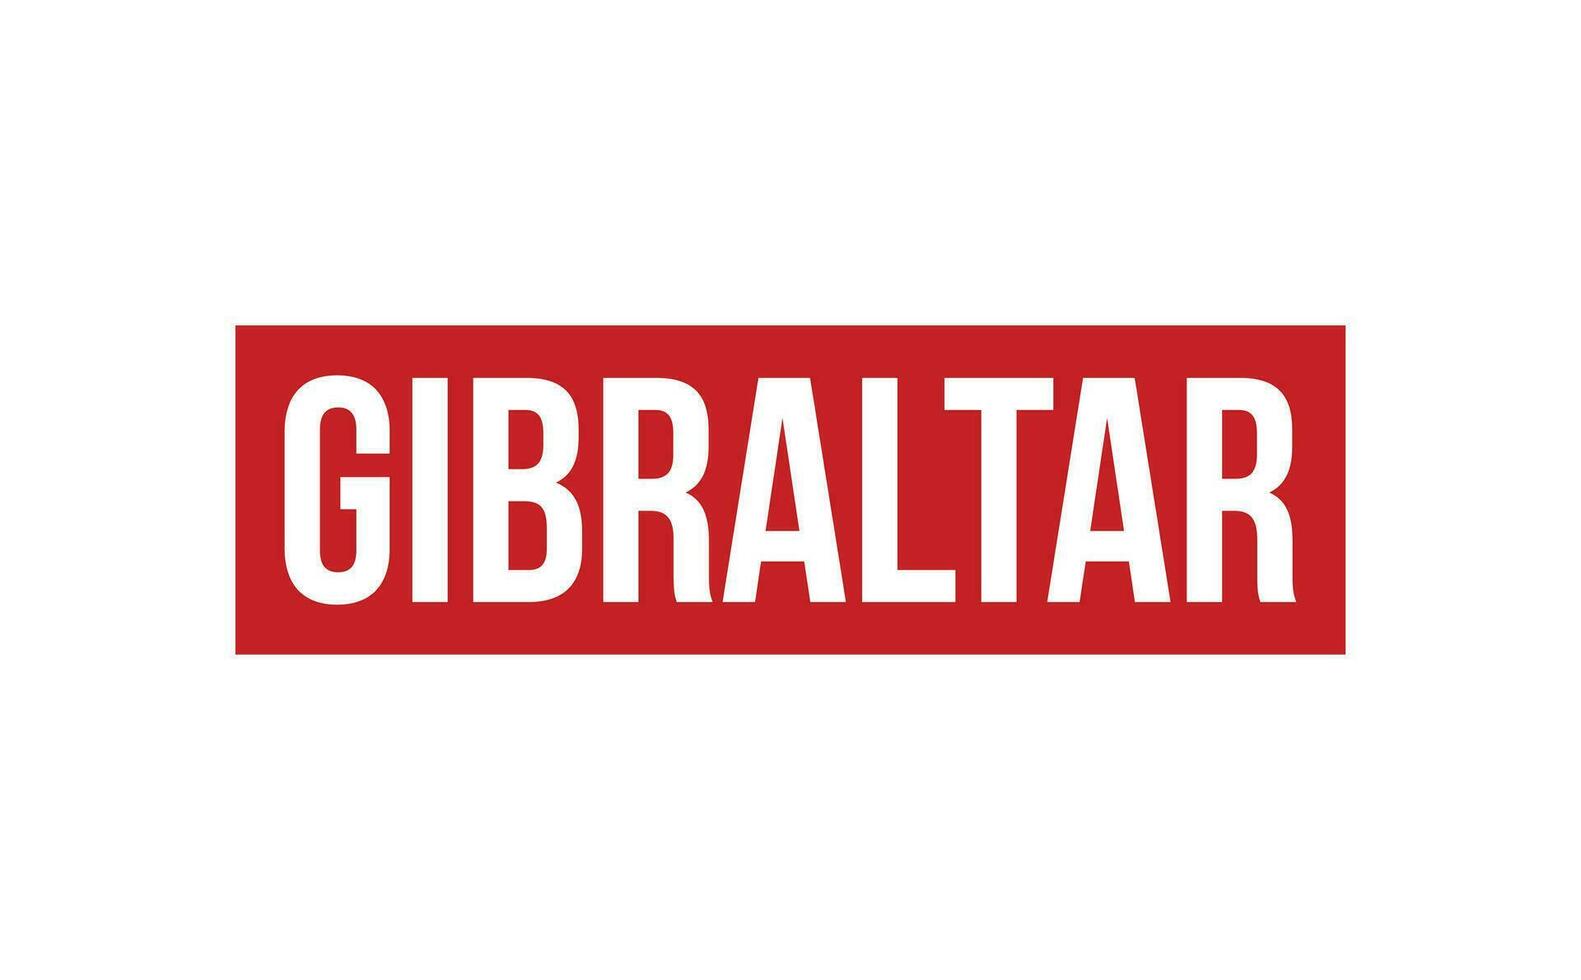 Gibraltar borracha carimbo foca vetor